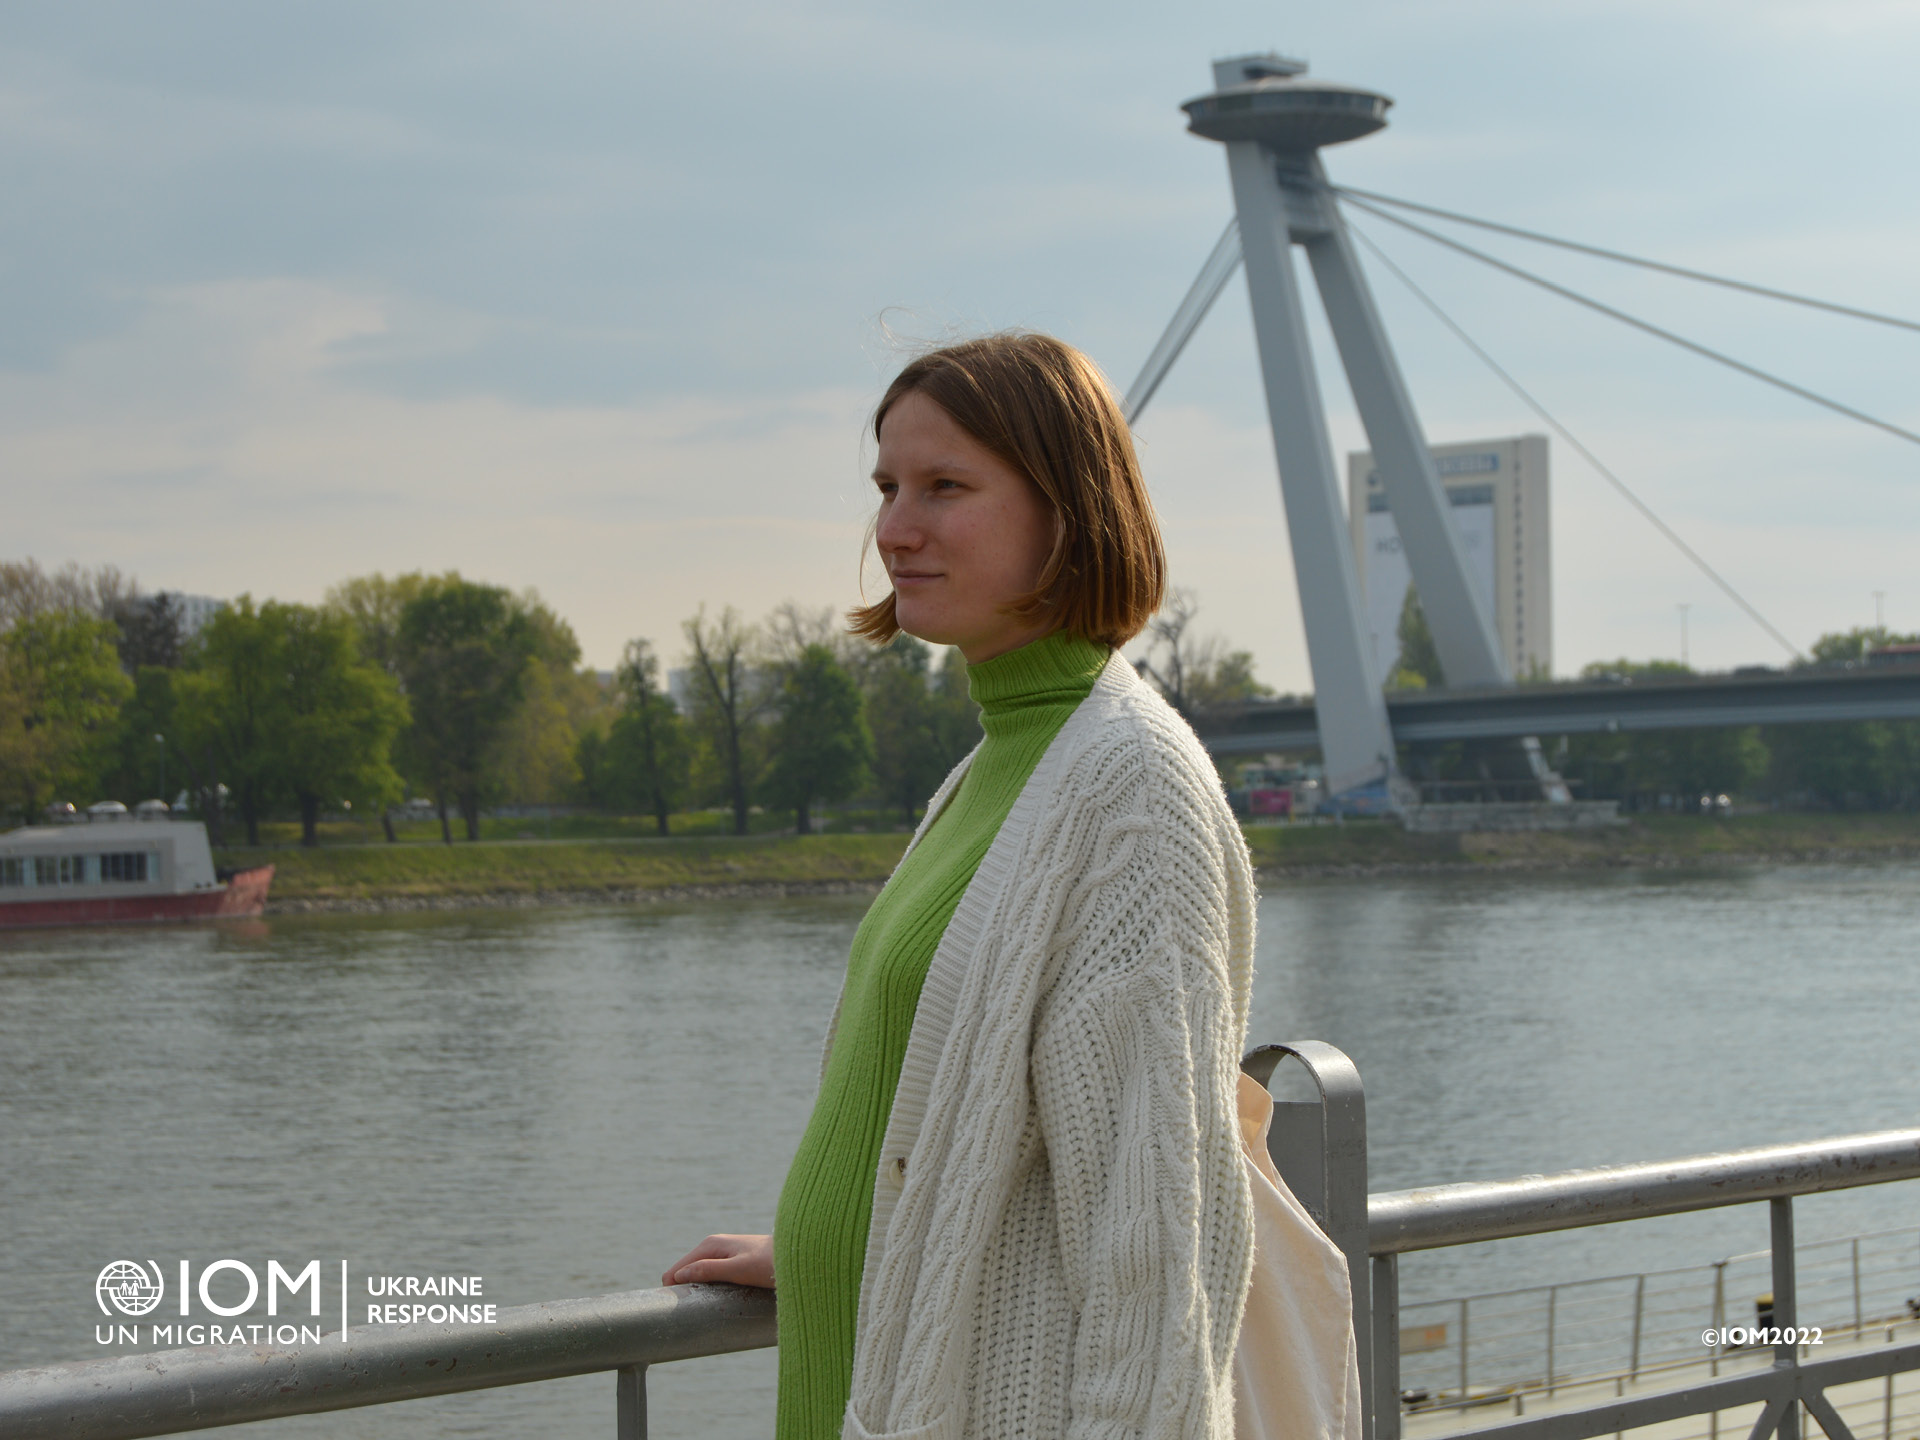 Počas pobytu v Bratislave si Mariia užívala prechádzky popri Dunaji, ktorý jej pripomínal rieku Dnepro. „Jednou z najcennejších lekcií, ktoré som sa naučila, je začať si vážiť všetko v živote; každú spoločnú chvíľu.“ Foto: © IOM/Barbora Kratochvílová a Kristína Tokač.